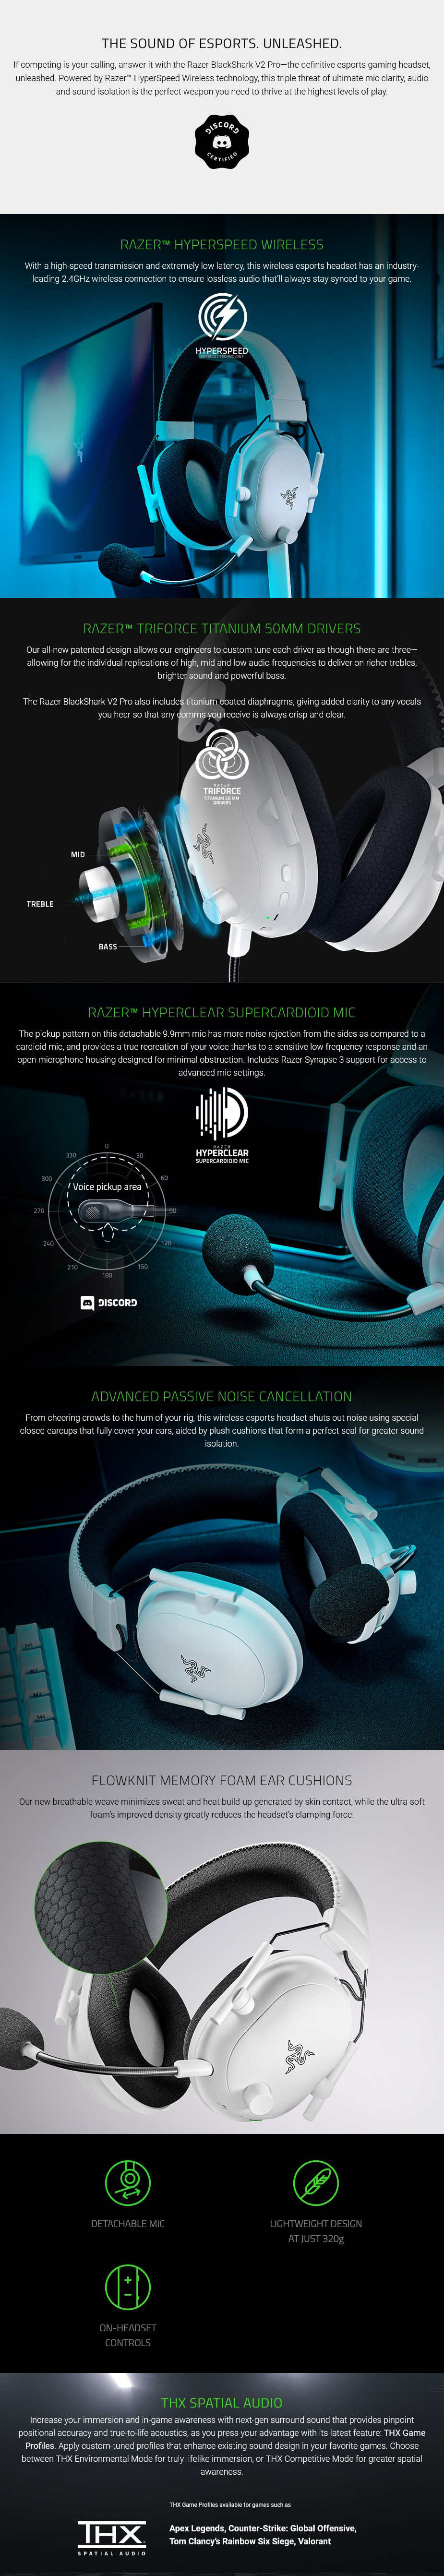 Headphones-Razer-BlackShark-V2-Pro-Wireless-Gaming-Headset-White-6